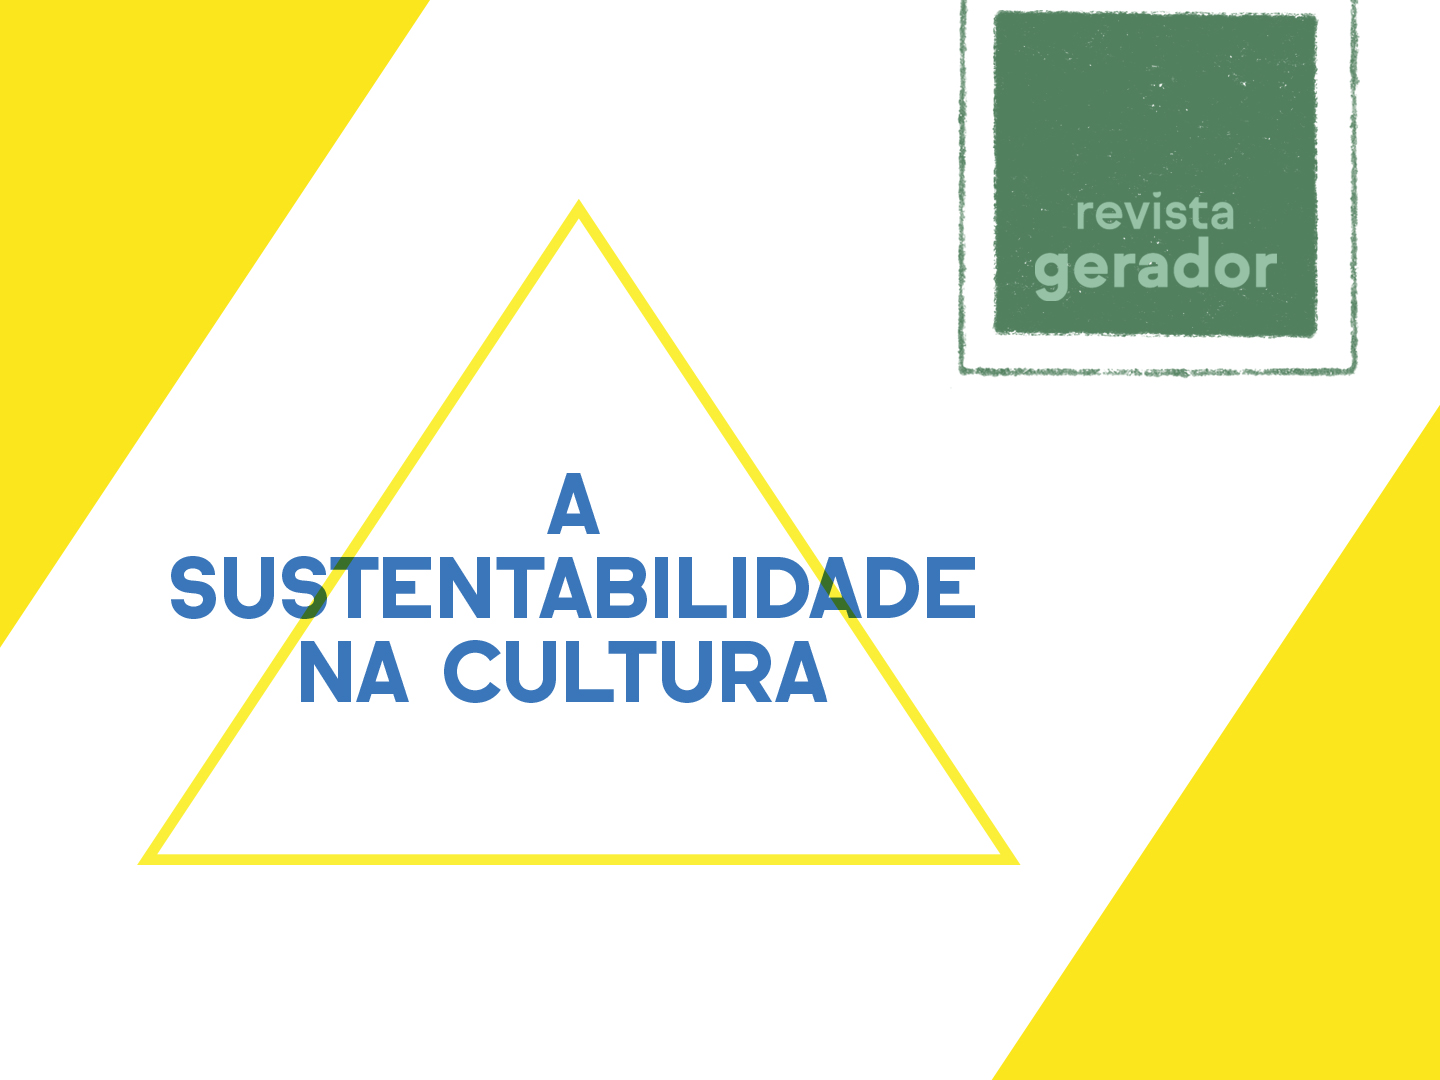 Google digitaliza cultura portuguesa para pessoas pensarem a arte